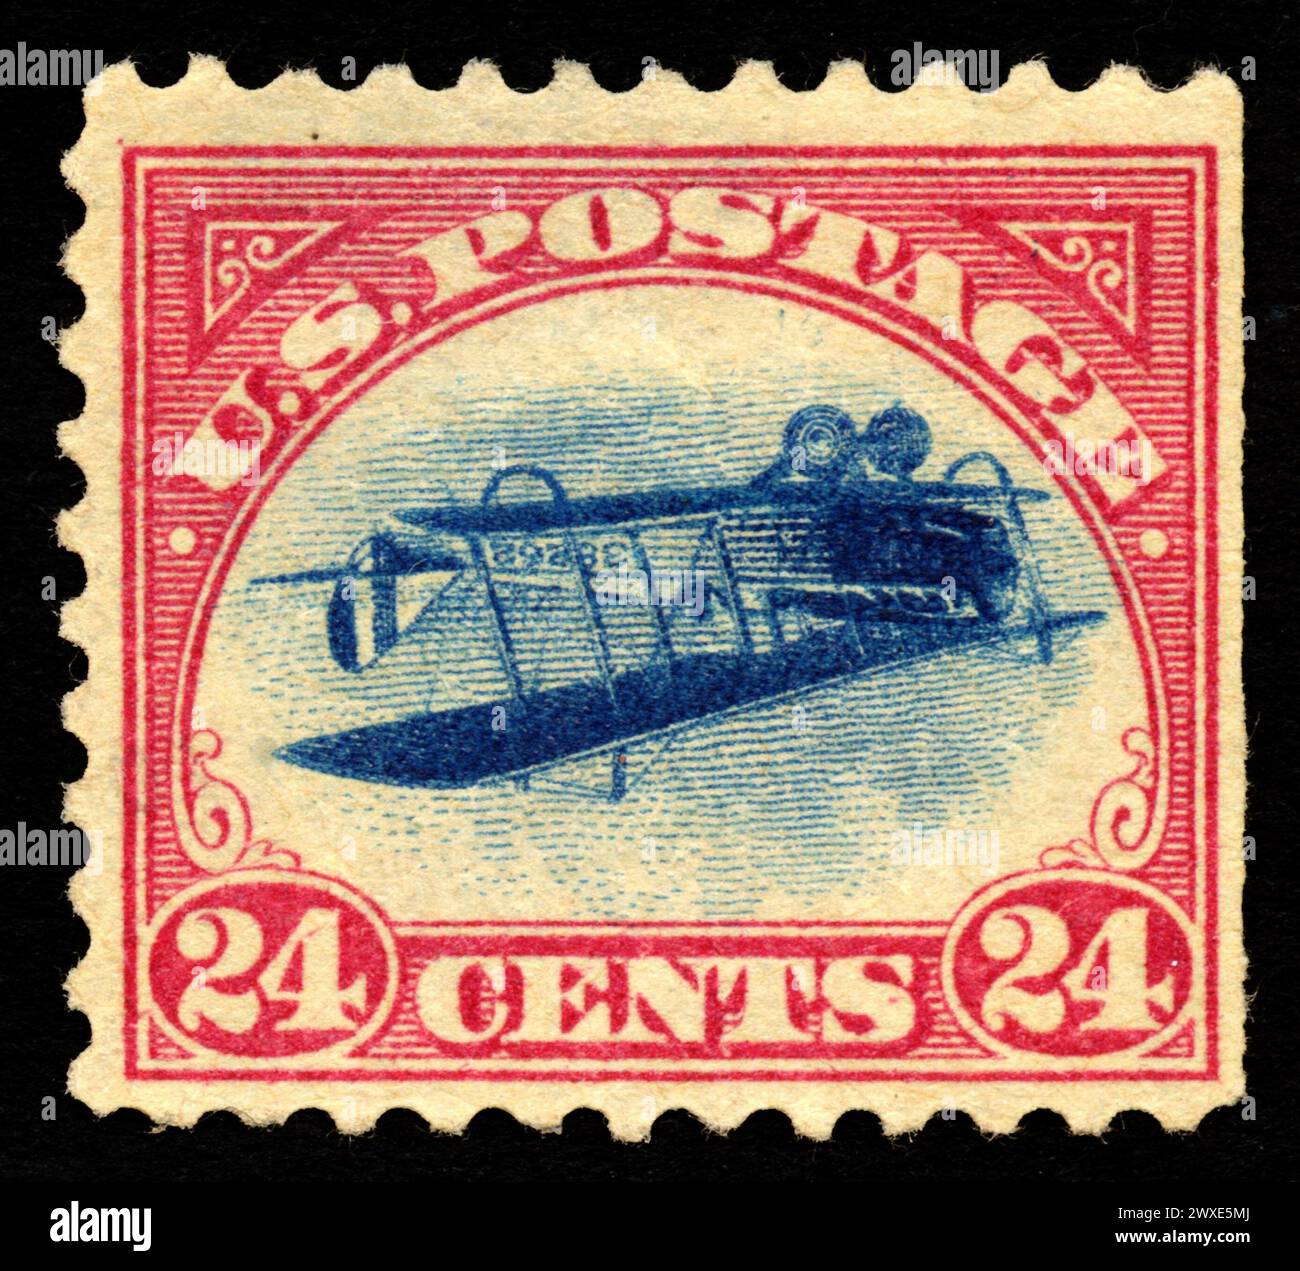 Le 'Jenny inversée' (également connu sous le nom de 'Jenny inversée ; 'Jenny inversée') est un timbre-poste américain à 24 cents émis pour la première fois le 10 mai 1918, dans lequel l'image de l'avion 'Curtiss JN-4' au centre du dessin est imprimée à l'envers ; C'est l'une des erreurs les plus célèbres dans la philatélie américaine. Une seule feuille de 100 timbres inversés a été trouvée, faisant de cette erreur l'une des plus prisées de la philatélie. Un seul Inverted Jenny a été vendu aux enchères en novembre 2007 pour $977500 Single Stamp sur fond noir Banque D'Images